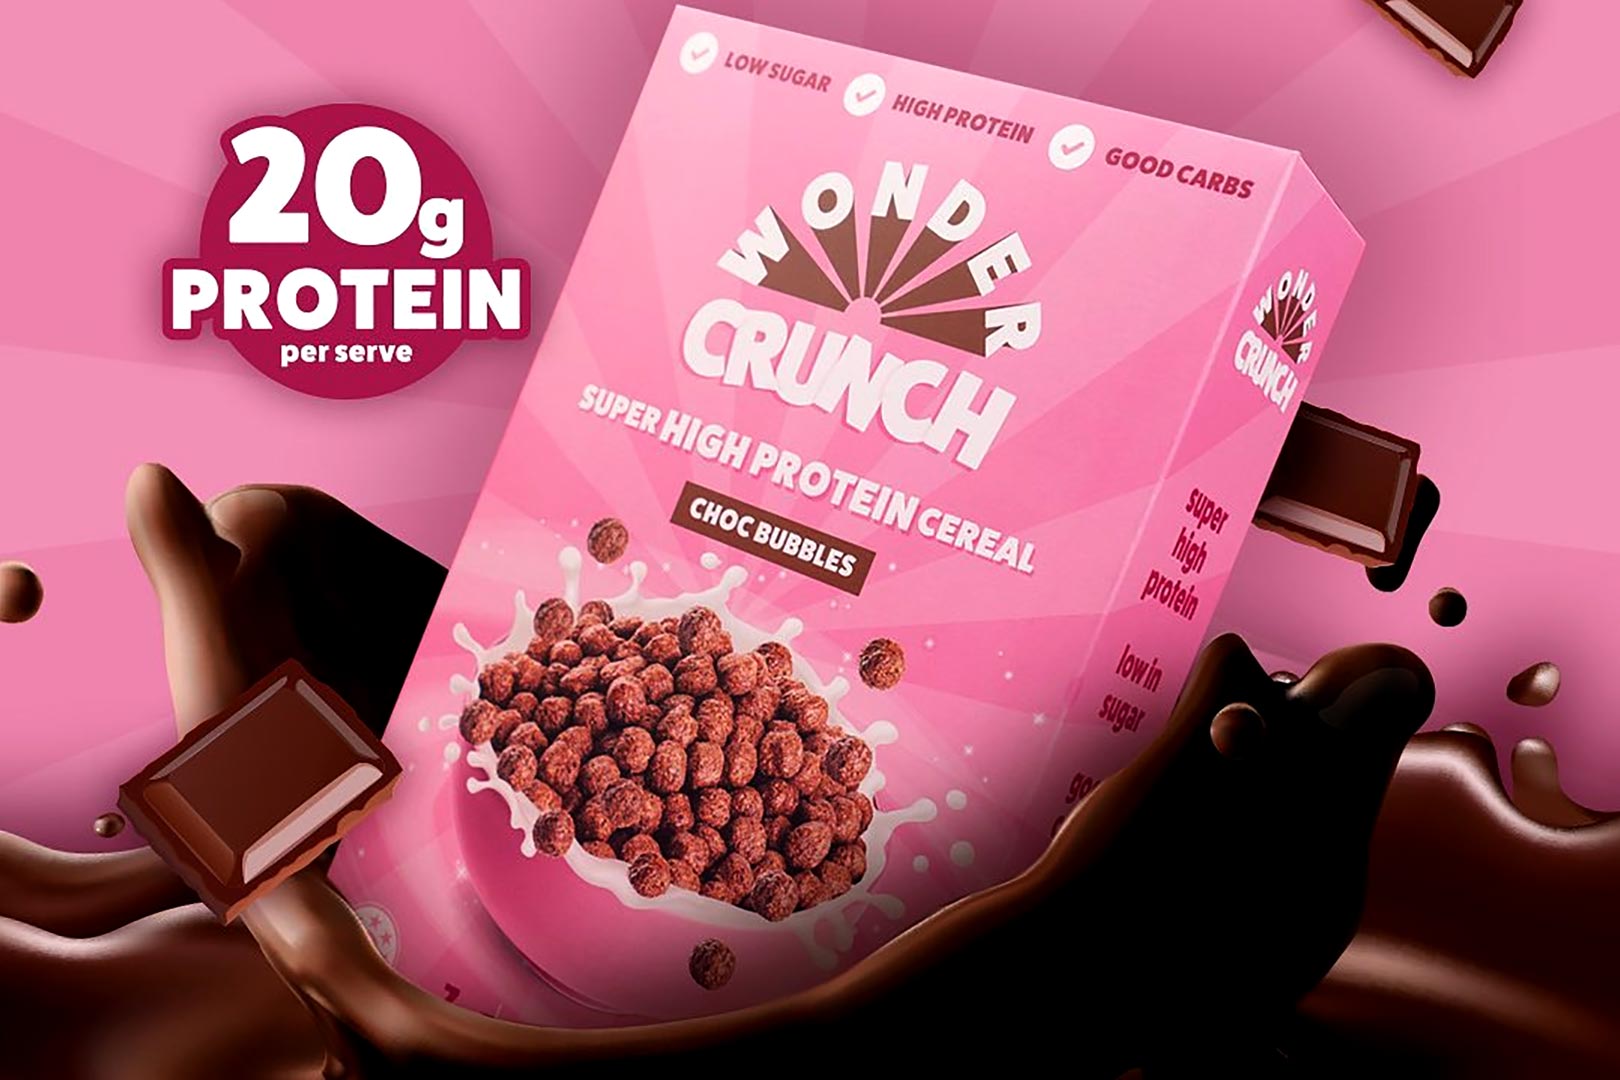 Wondercrunch Super High Protein Cereal